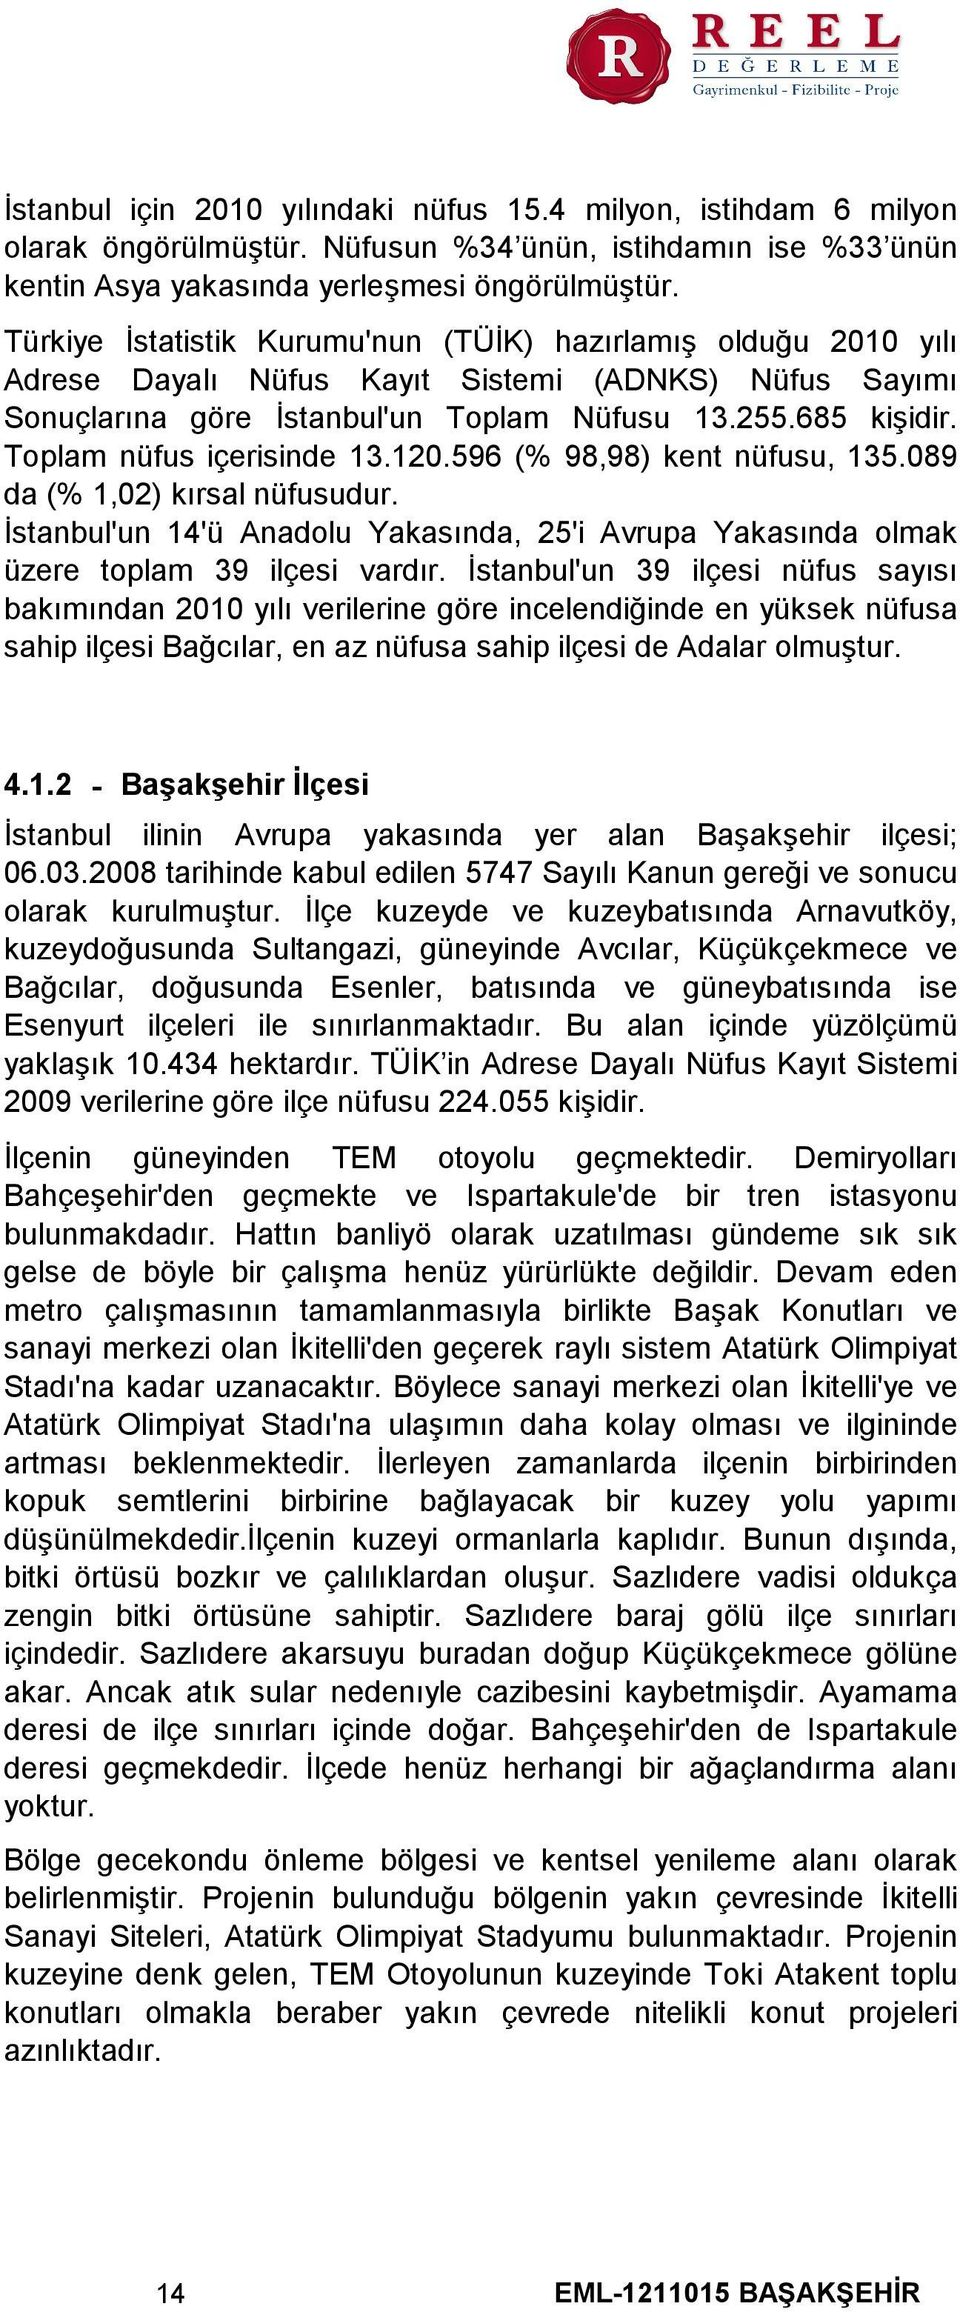 Toplam nüfus içerisinde 13.120.596 (% 98,98) kent nüfusu, 135.089 da (% 1,02) kırsal nüfusudur. İstanbul'un 14'ü Anadolu Yakasında, 25'i Avrupa Yakasında olmak üzere toplam 39 ilçesi vardır.